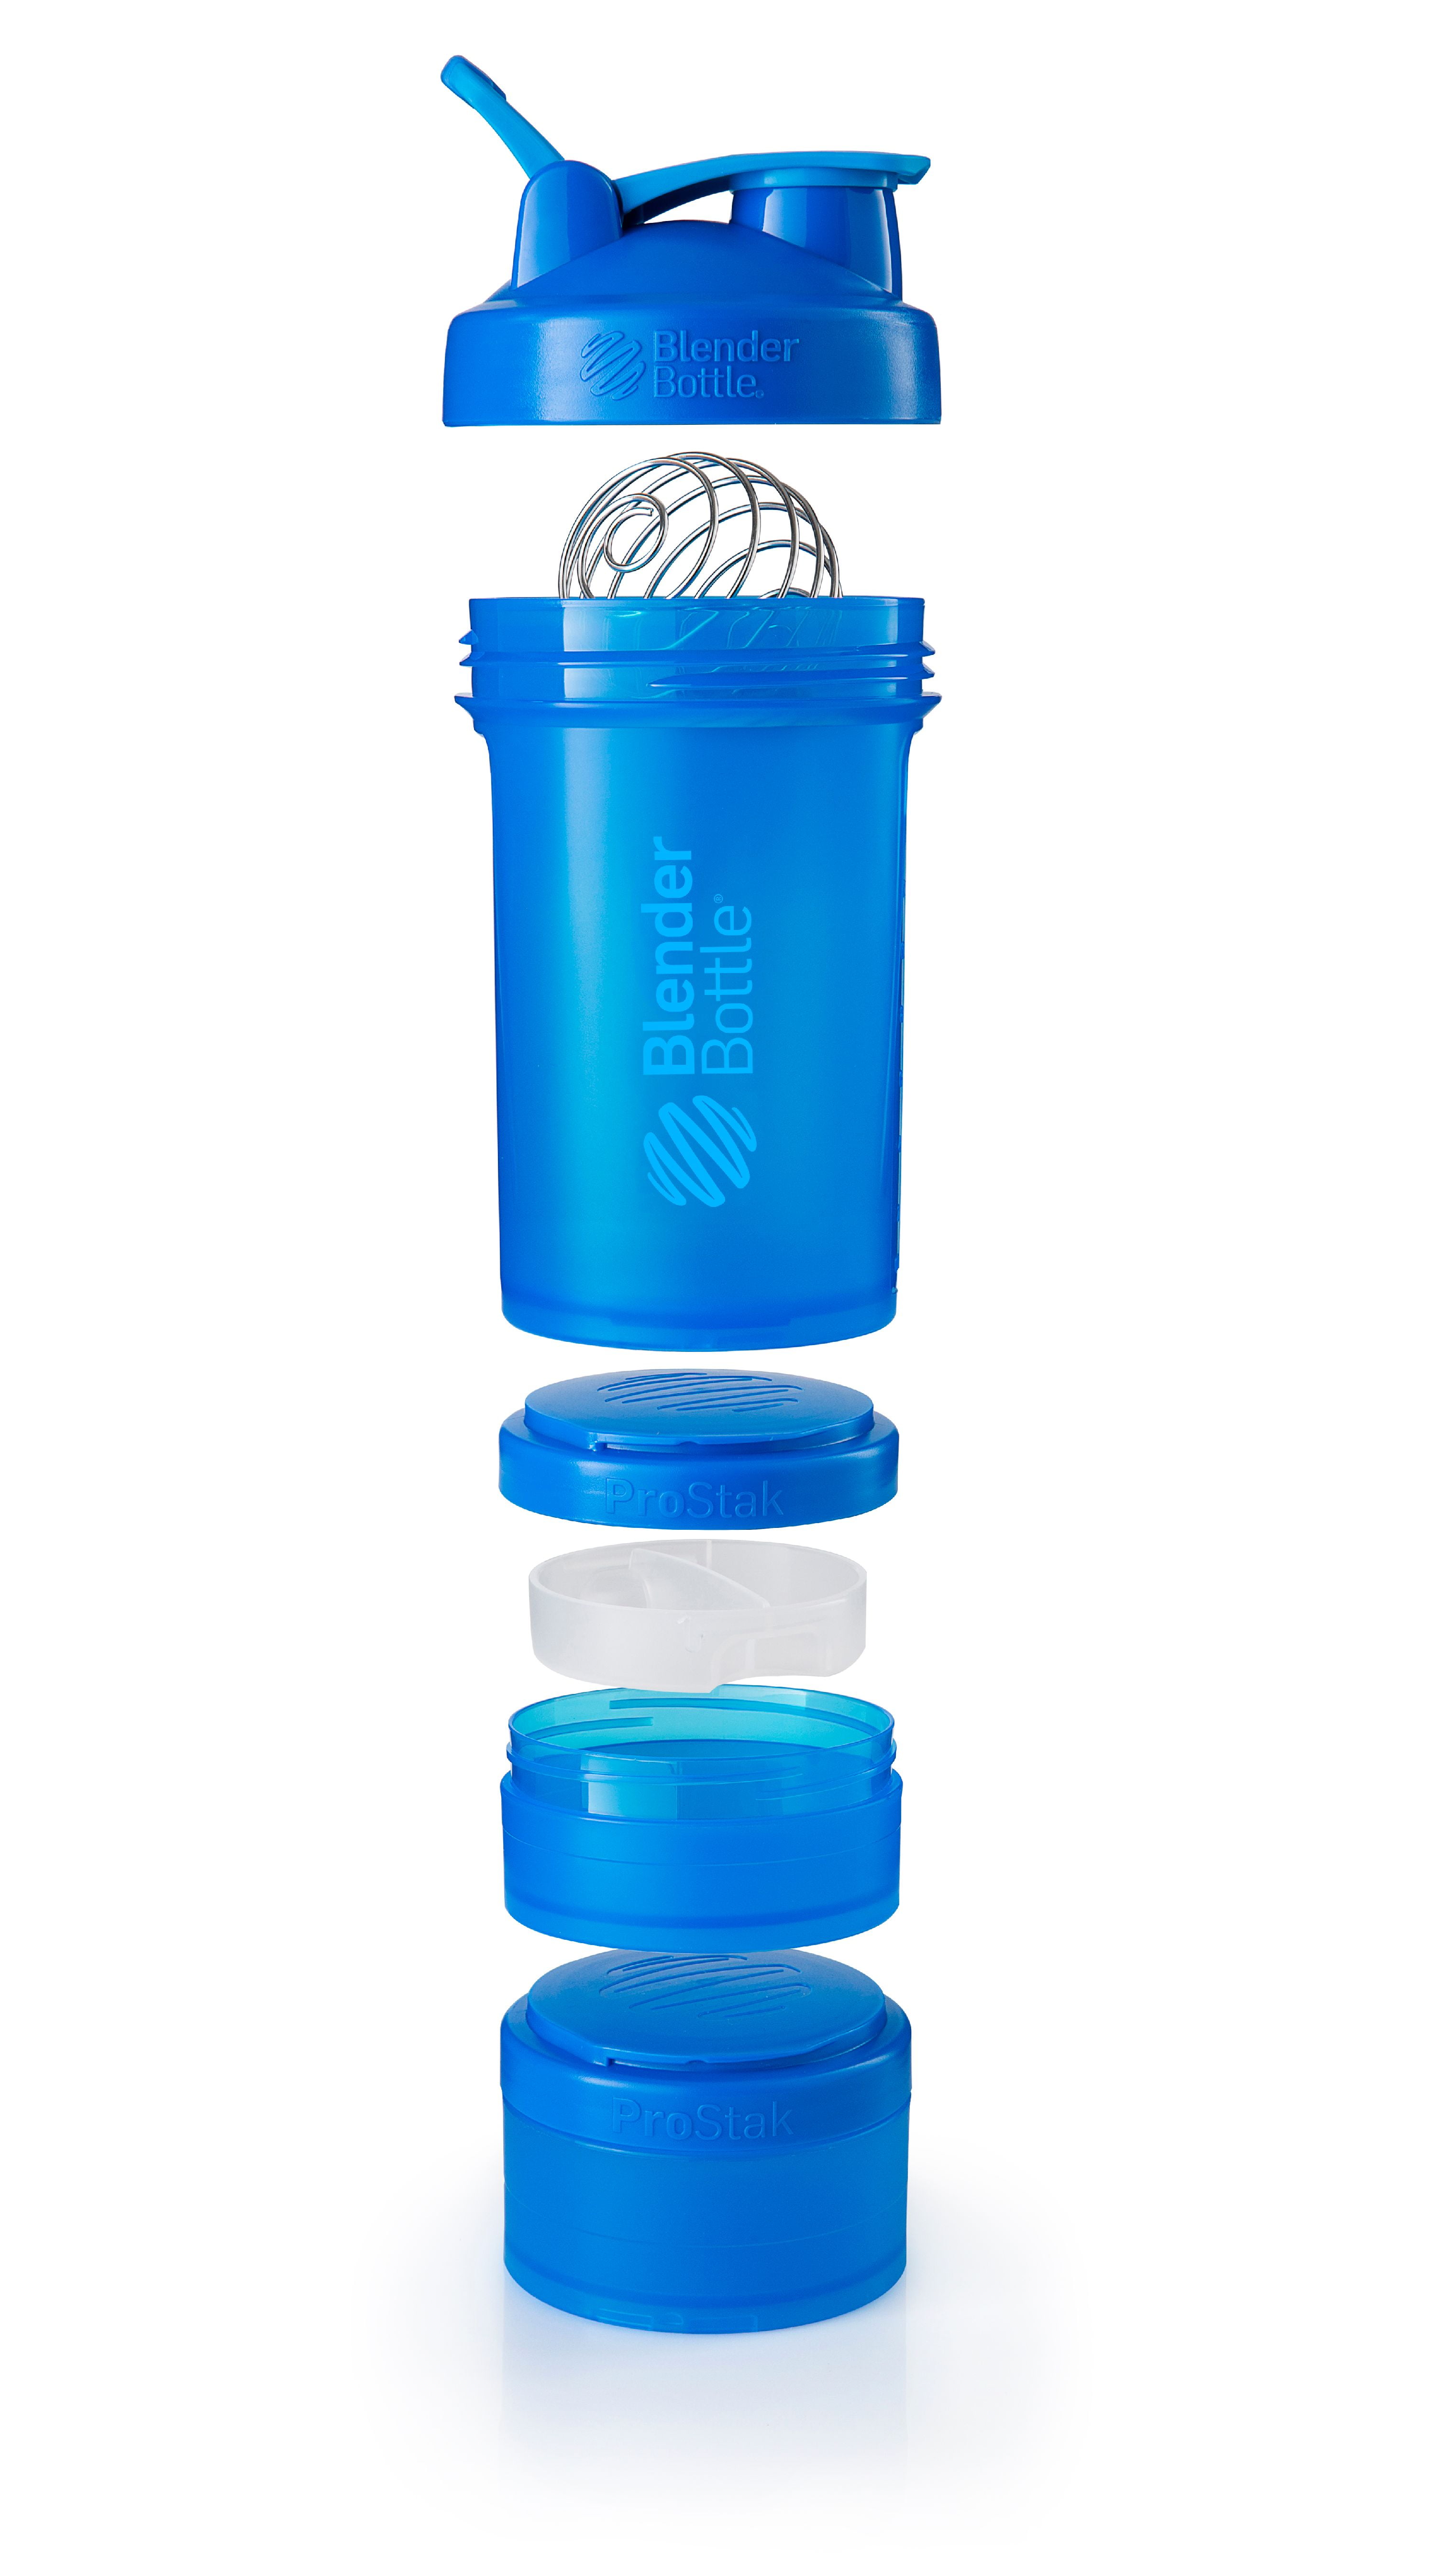 Blender Bottle ProStak 650ml / Šeiker